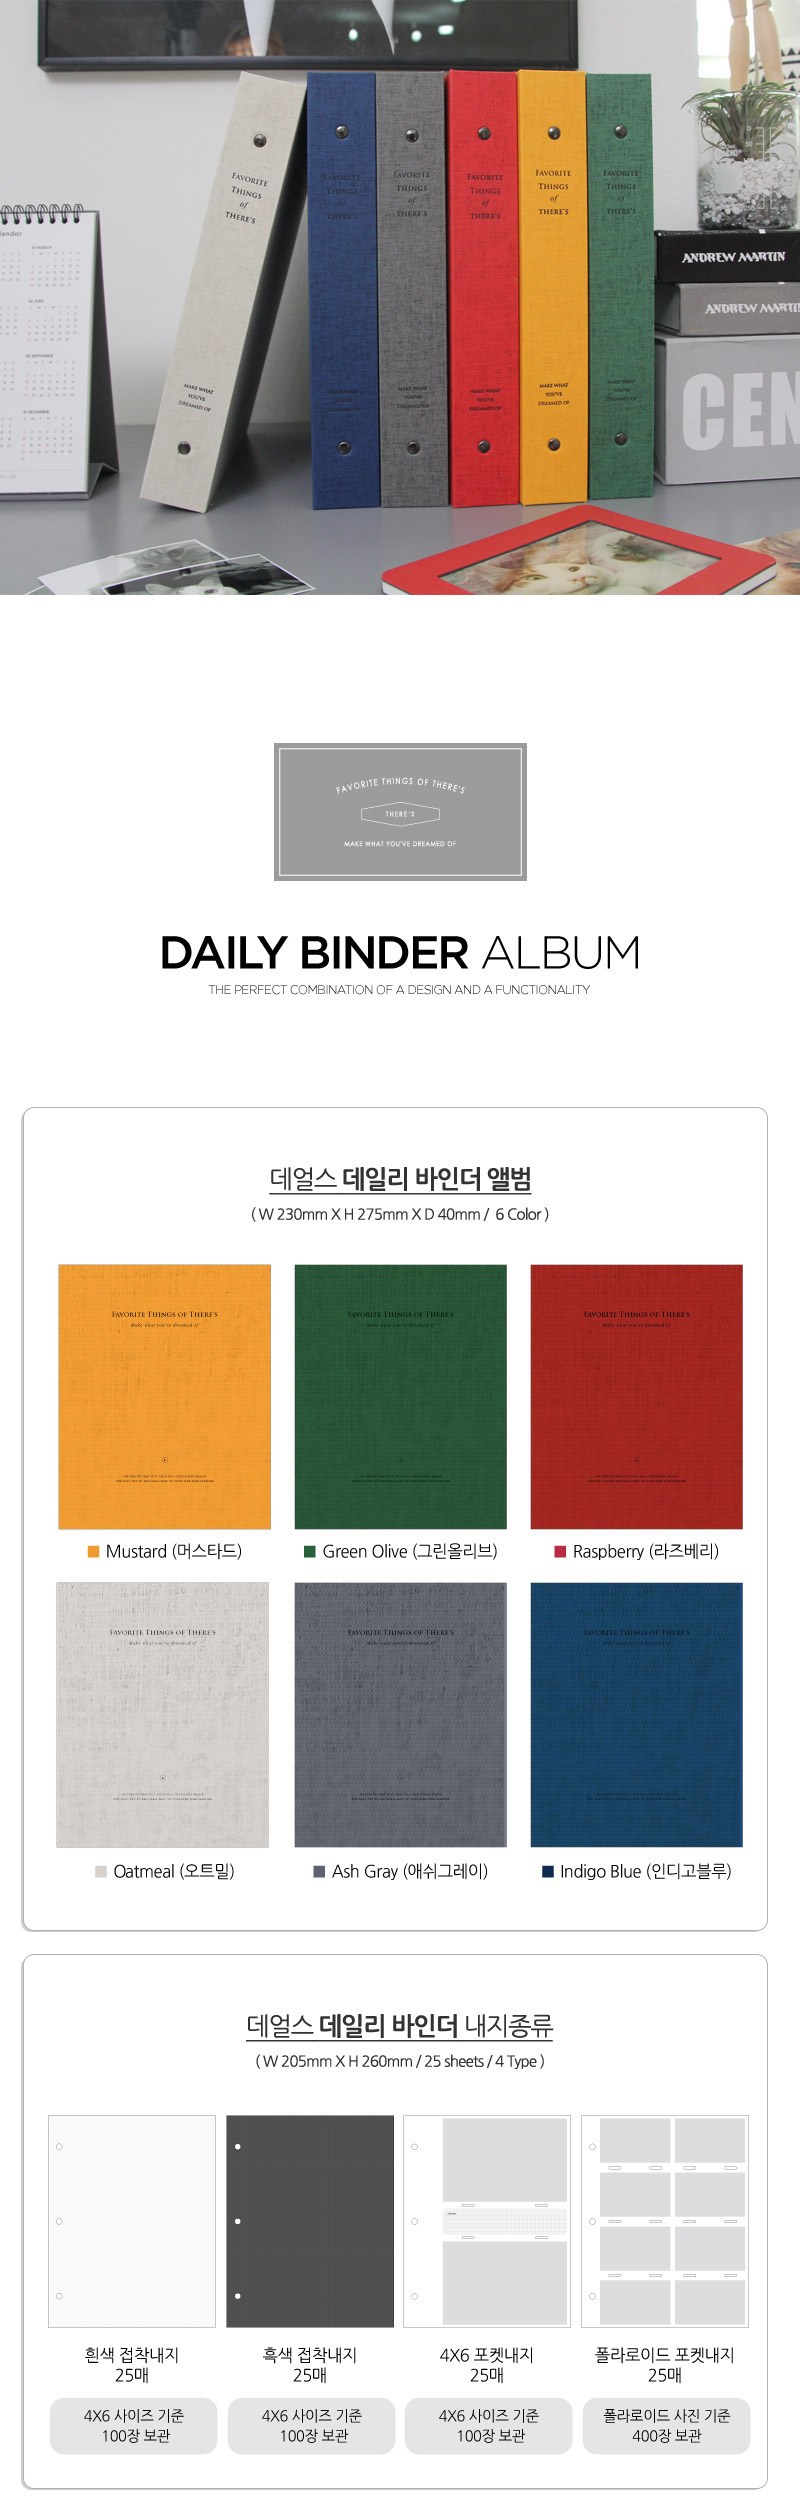 Daily Binder Album